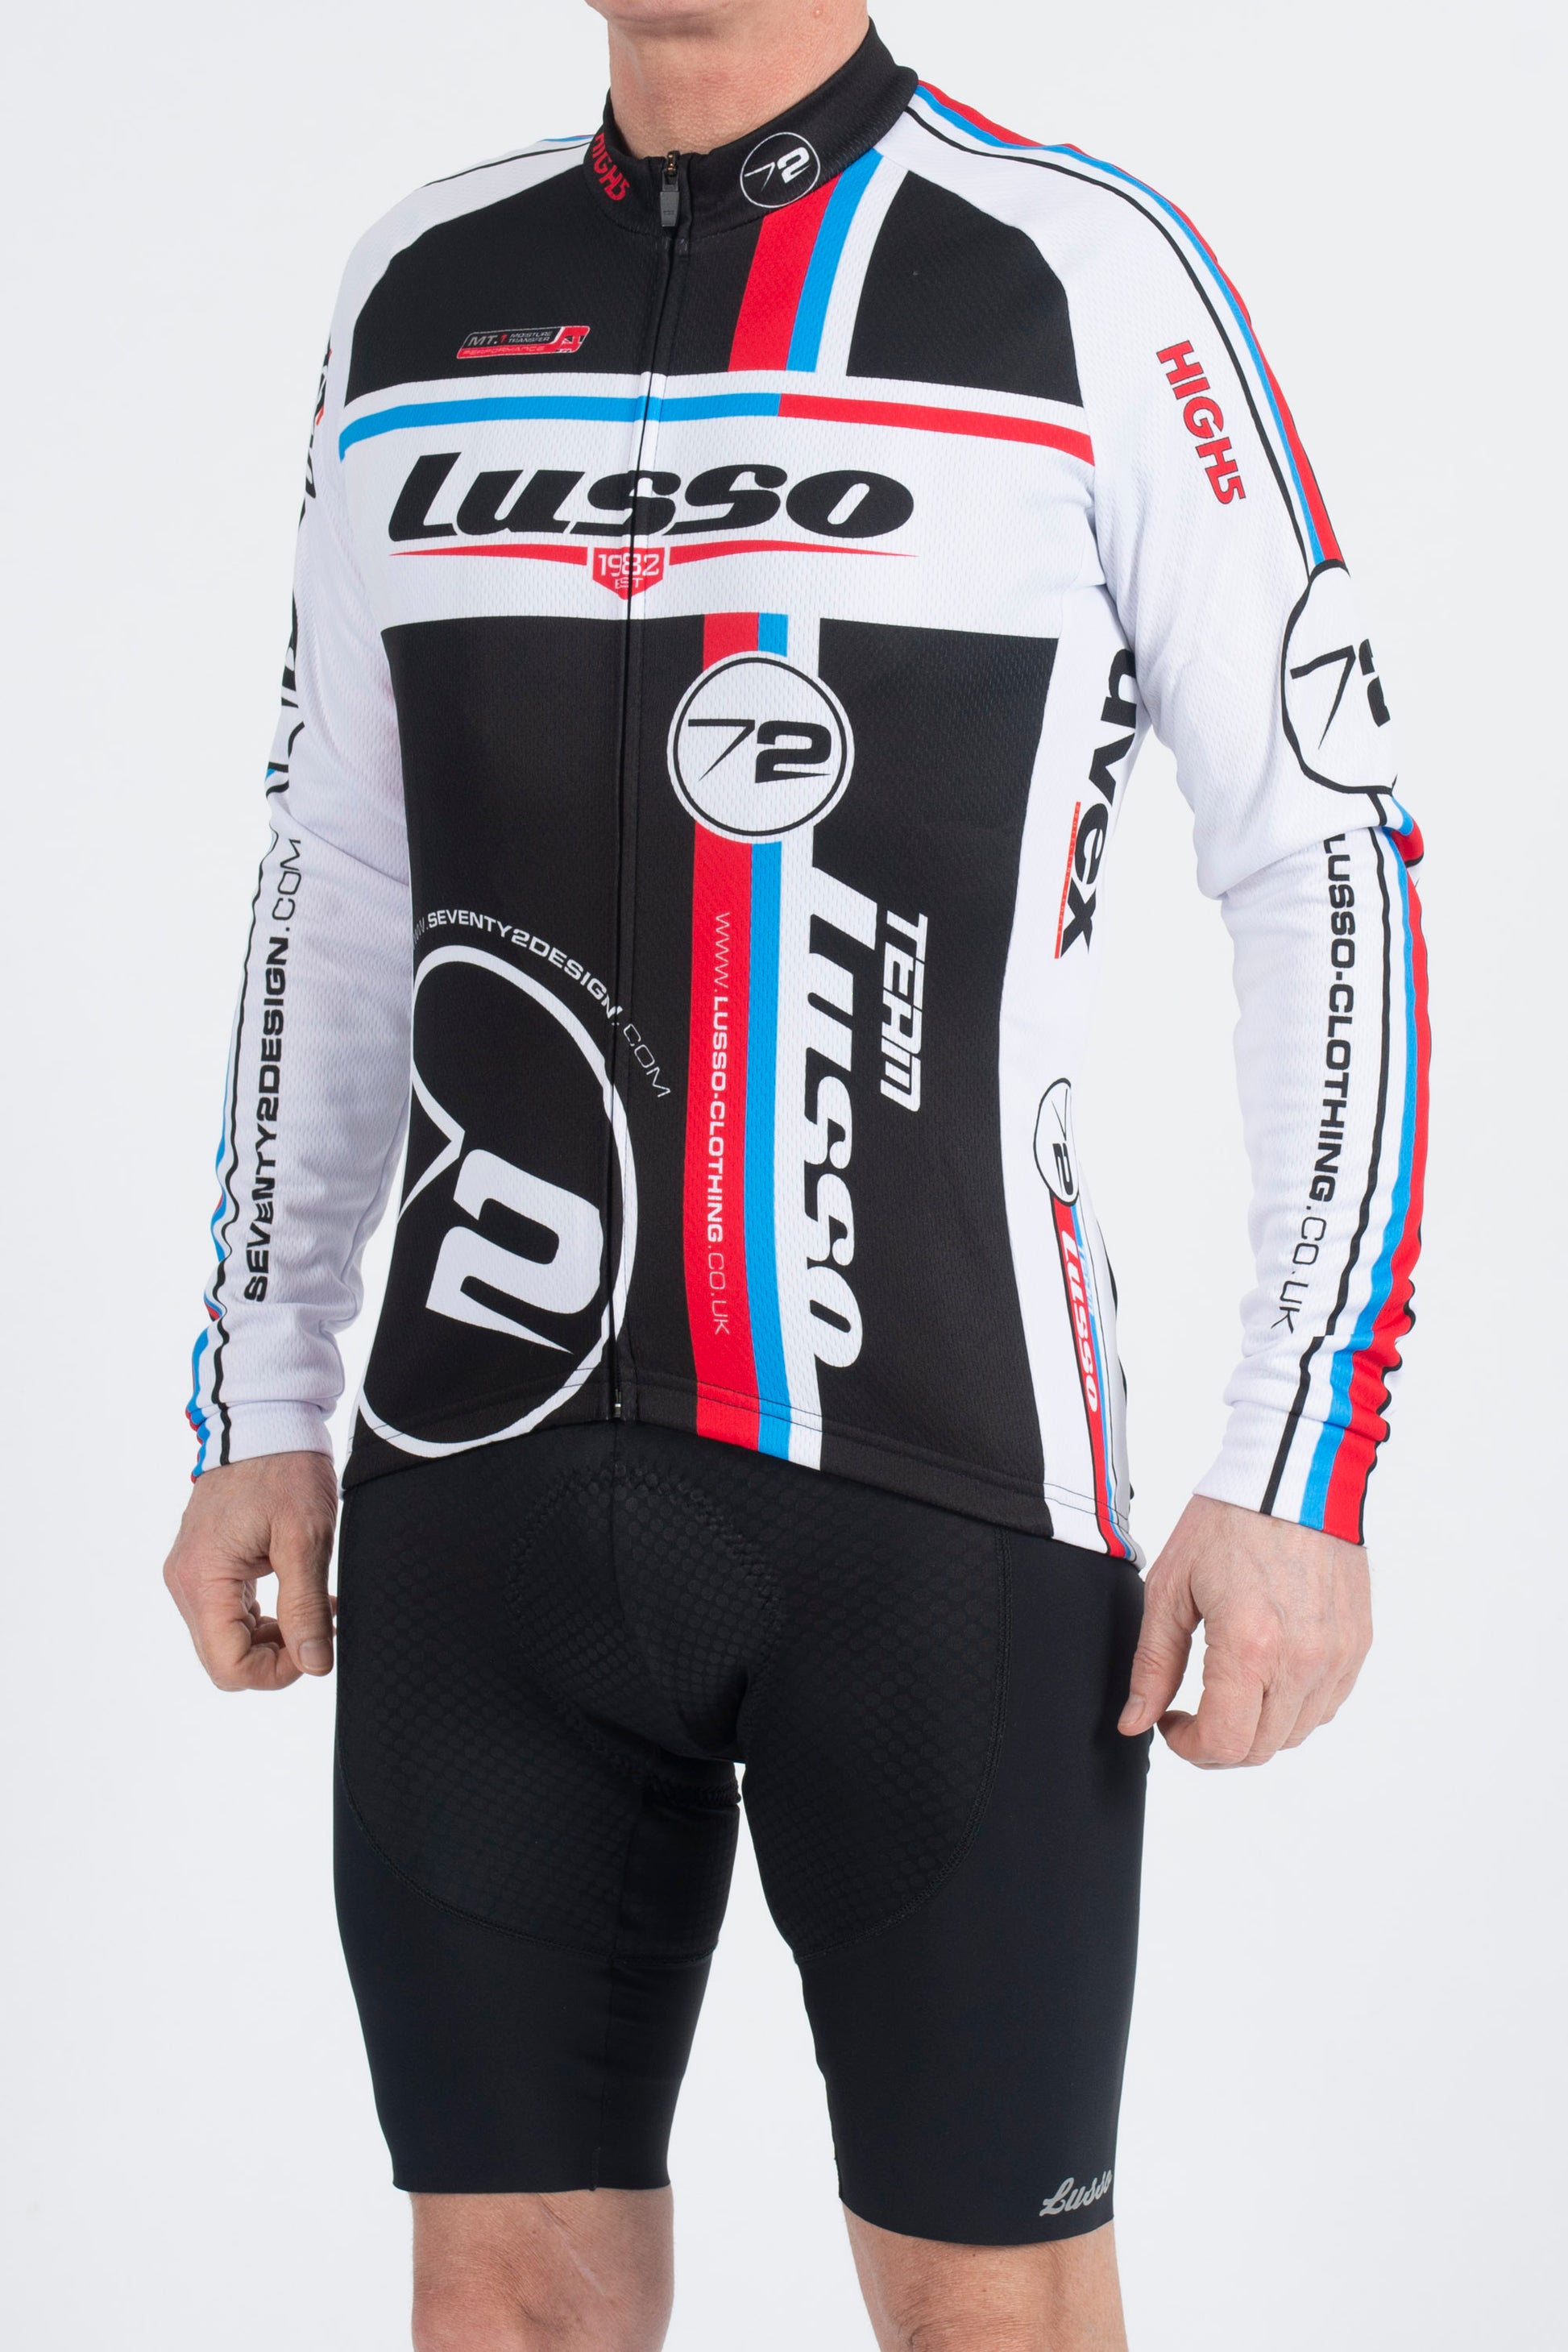 Team Long Sleeve Jersey - Lusso Cycle Wear